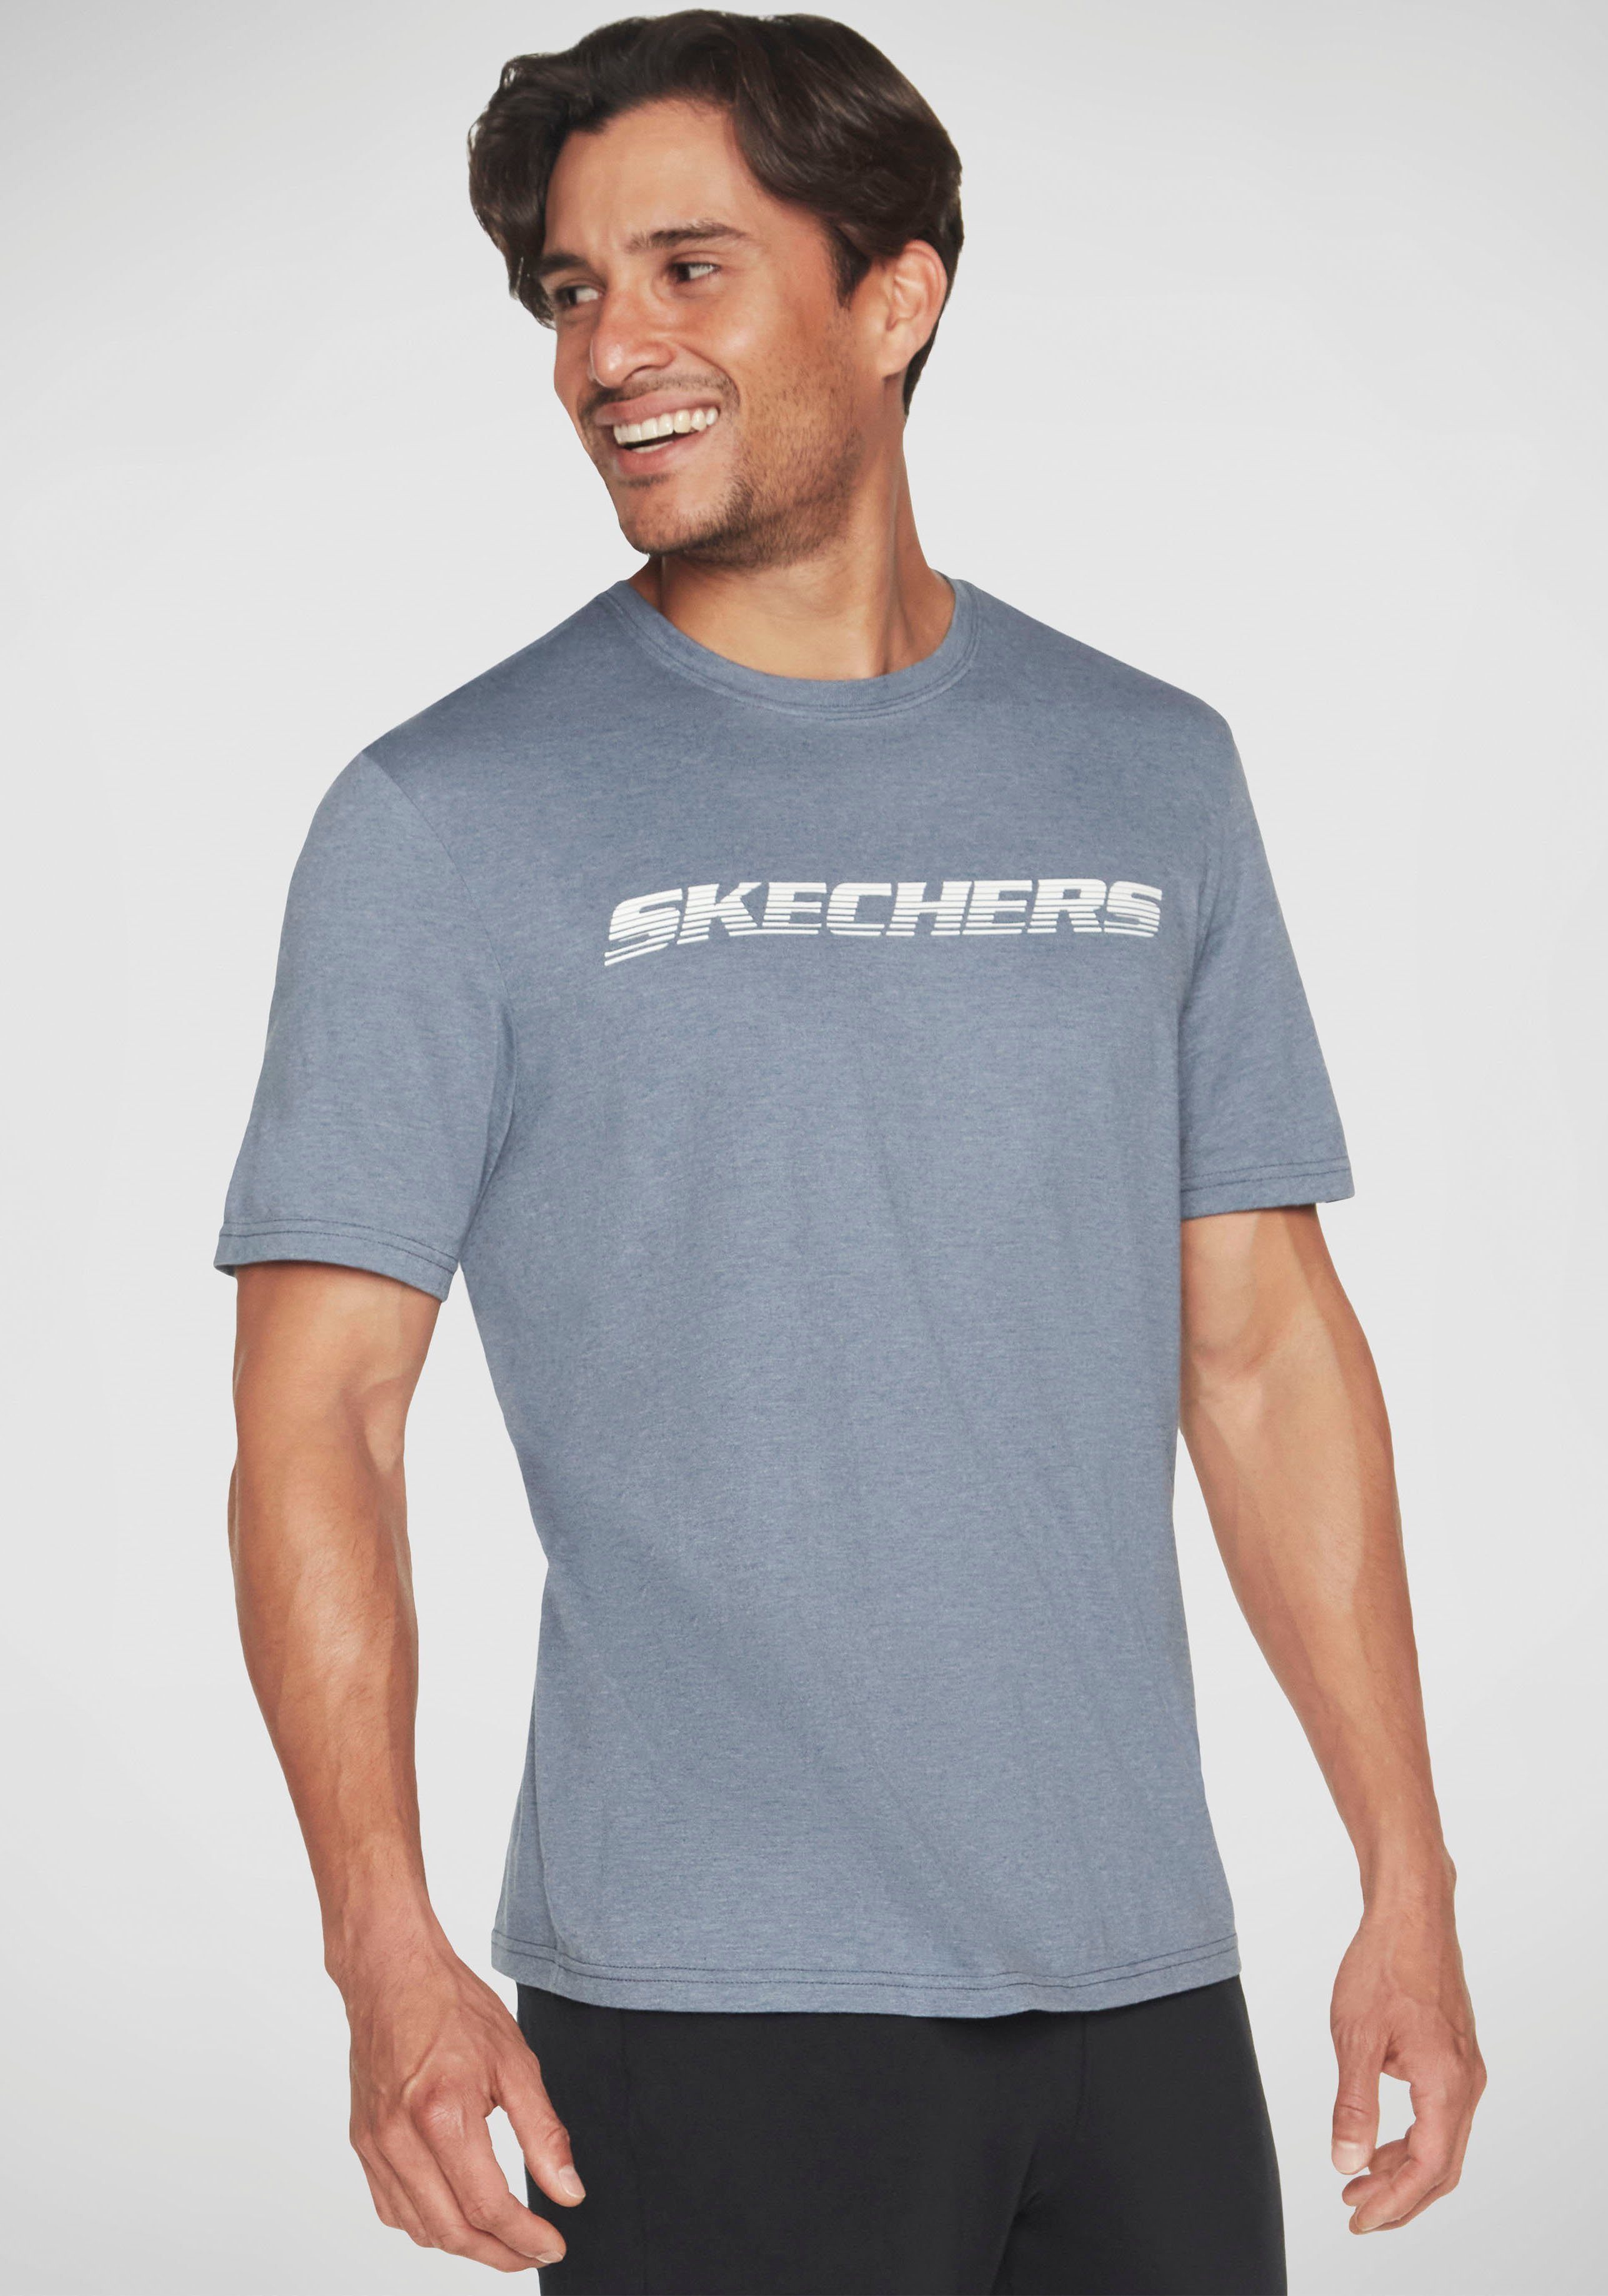 TEE MOTION Skechers blaugrau T-Shirt